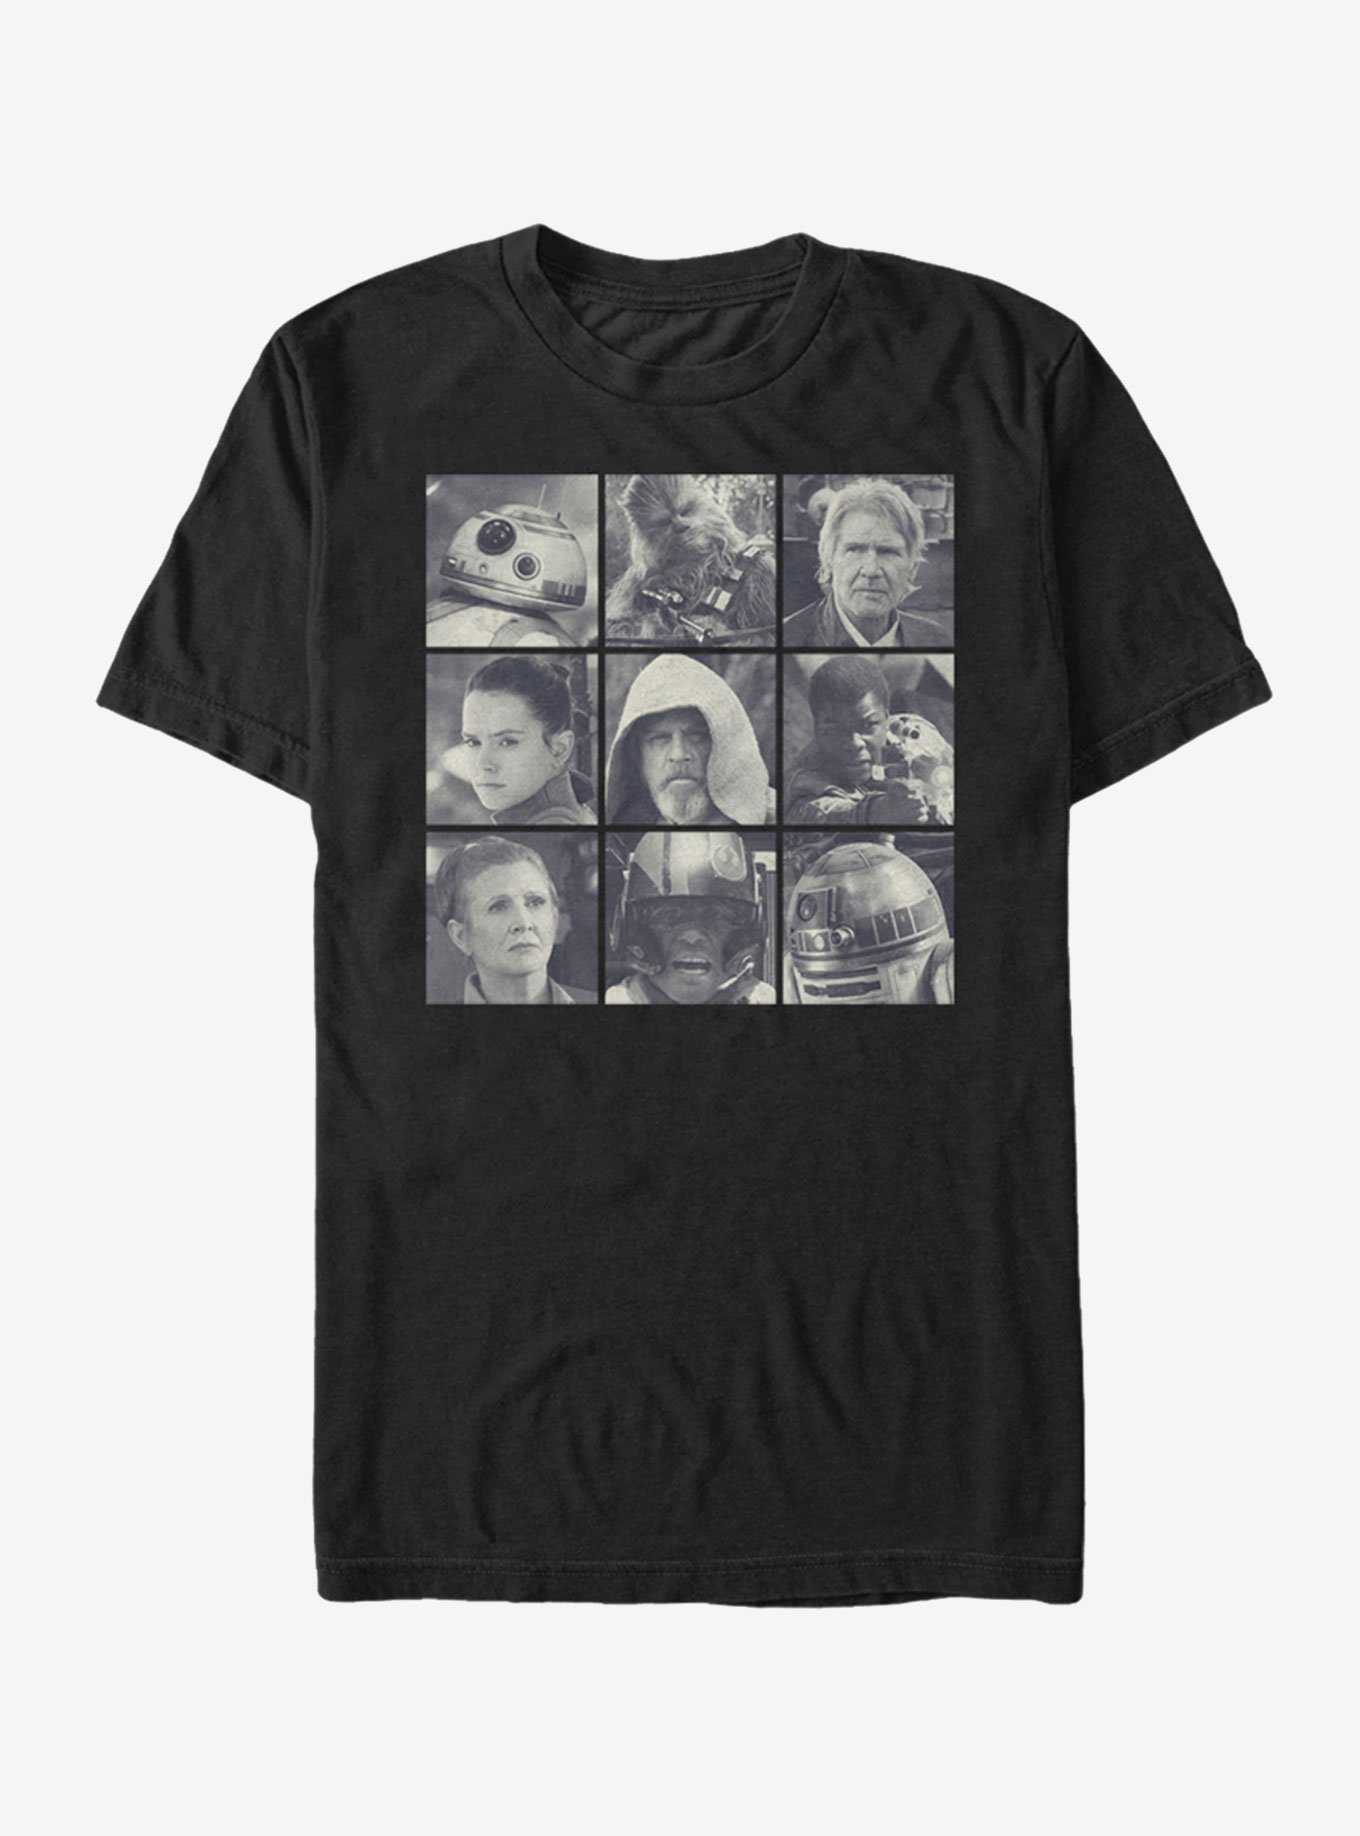 Star Wars Rebel Heroes T-Shirt, , hi-res